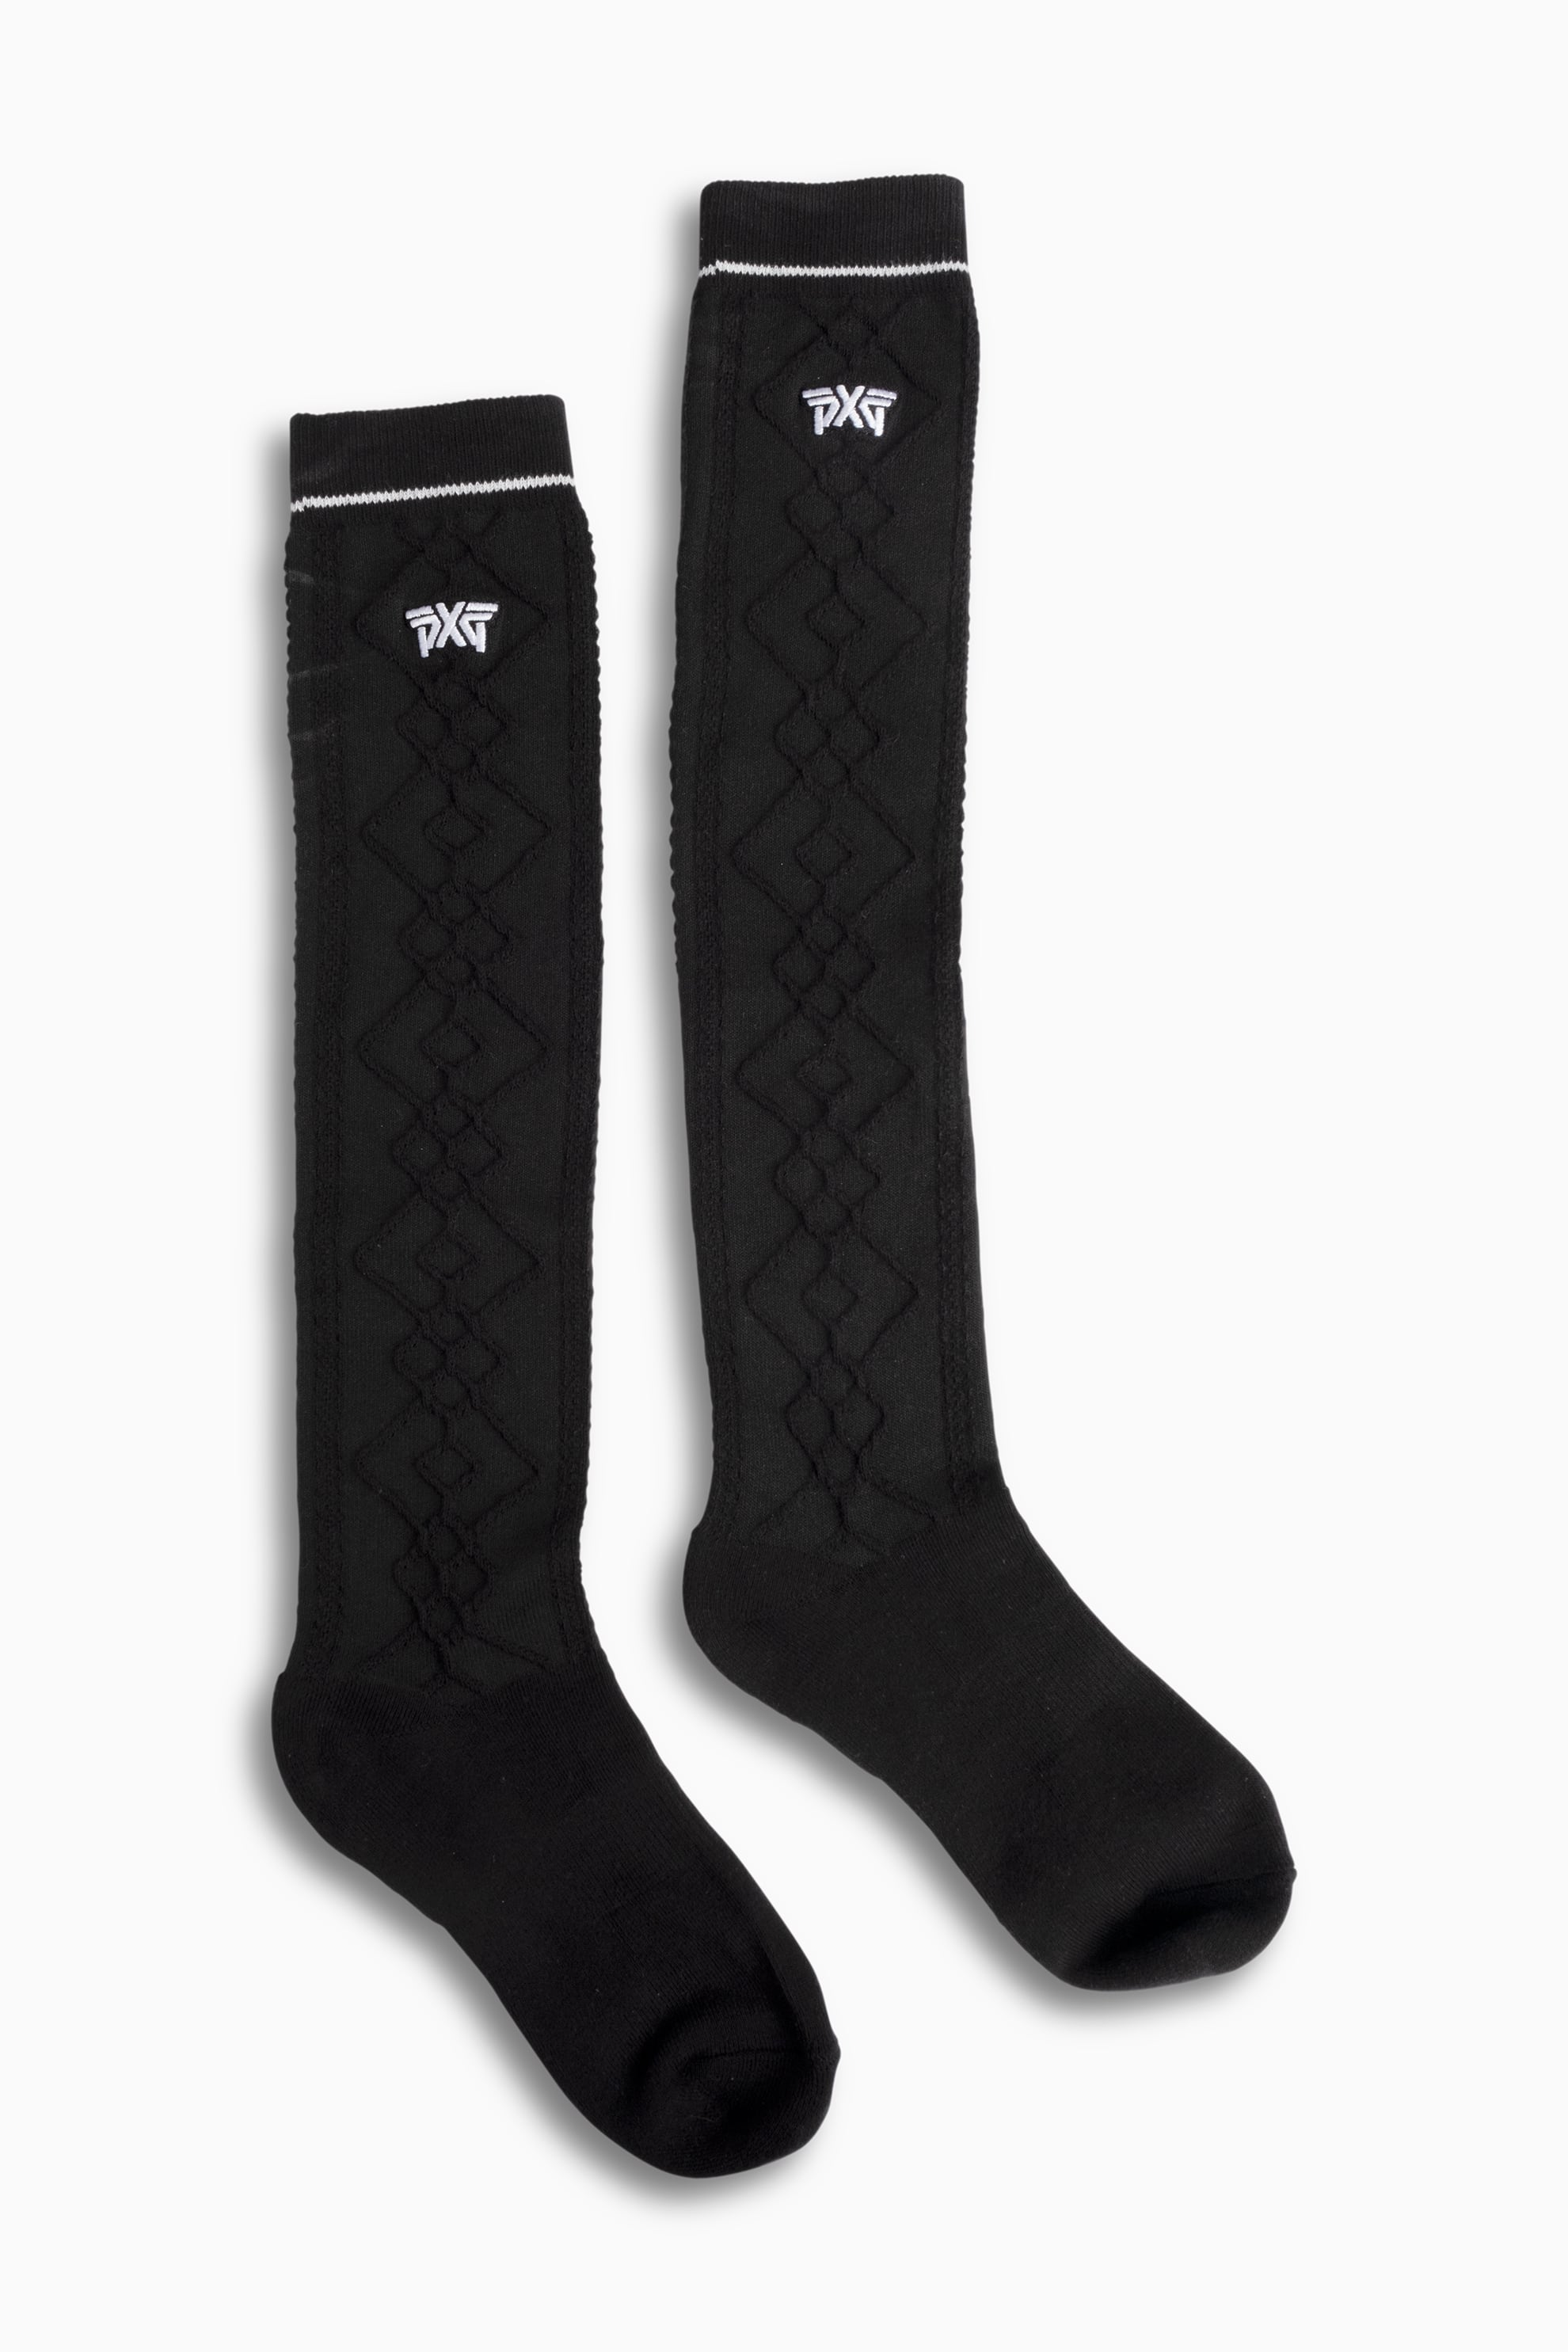 PXG Men's Jacquard Logo Ankle Socks in White